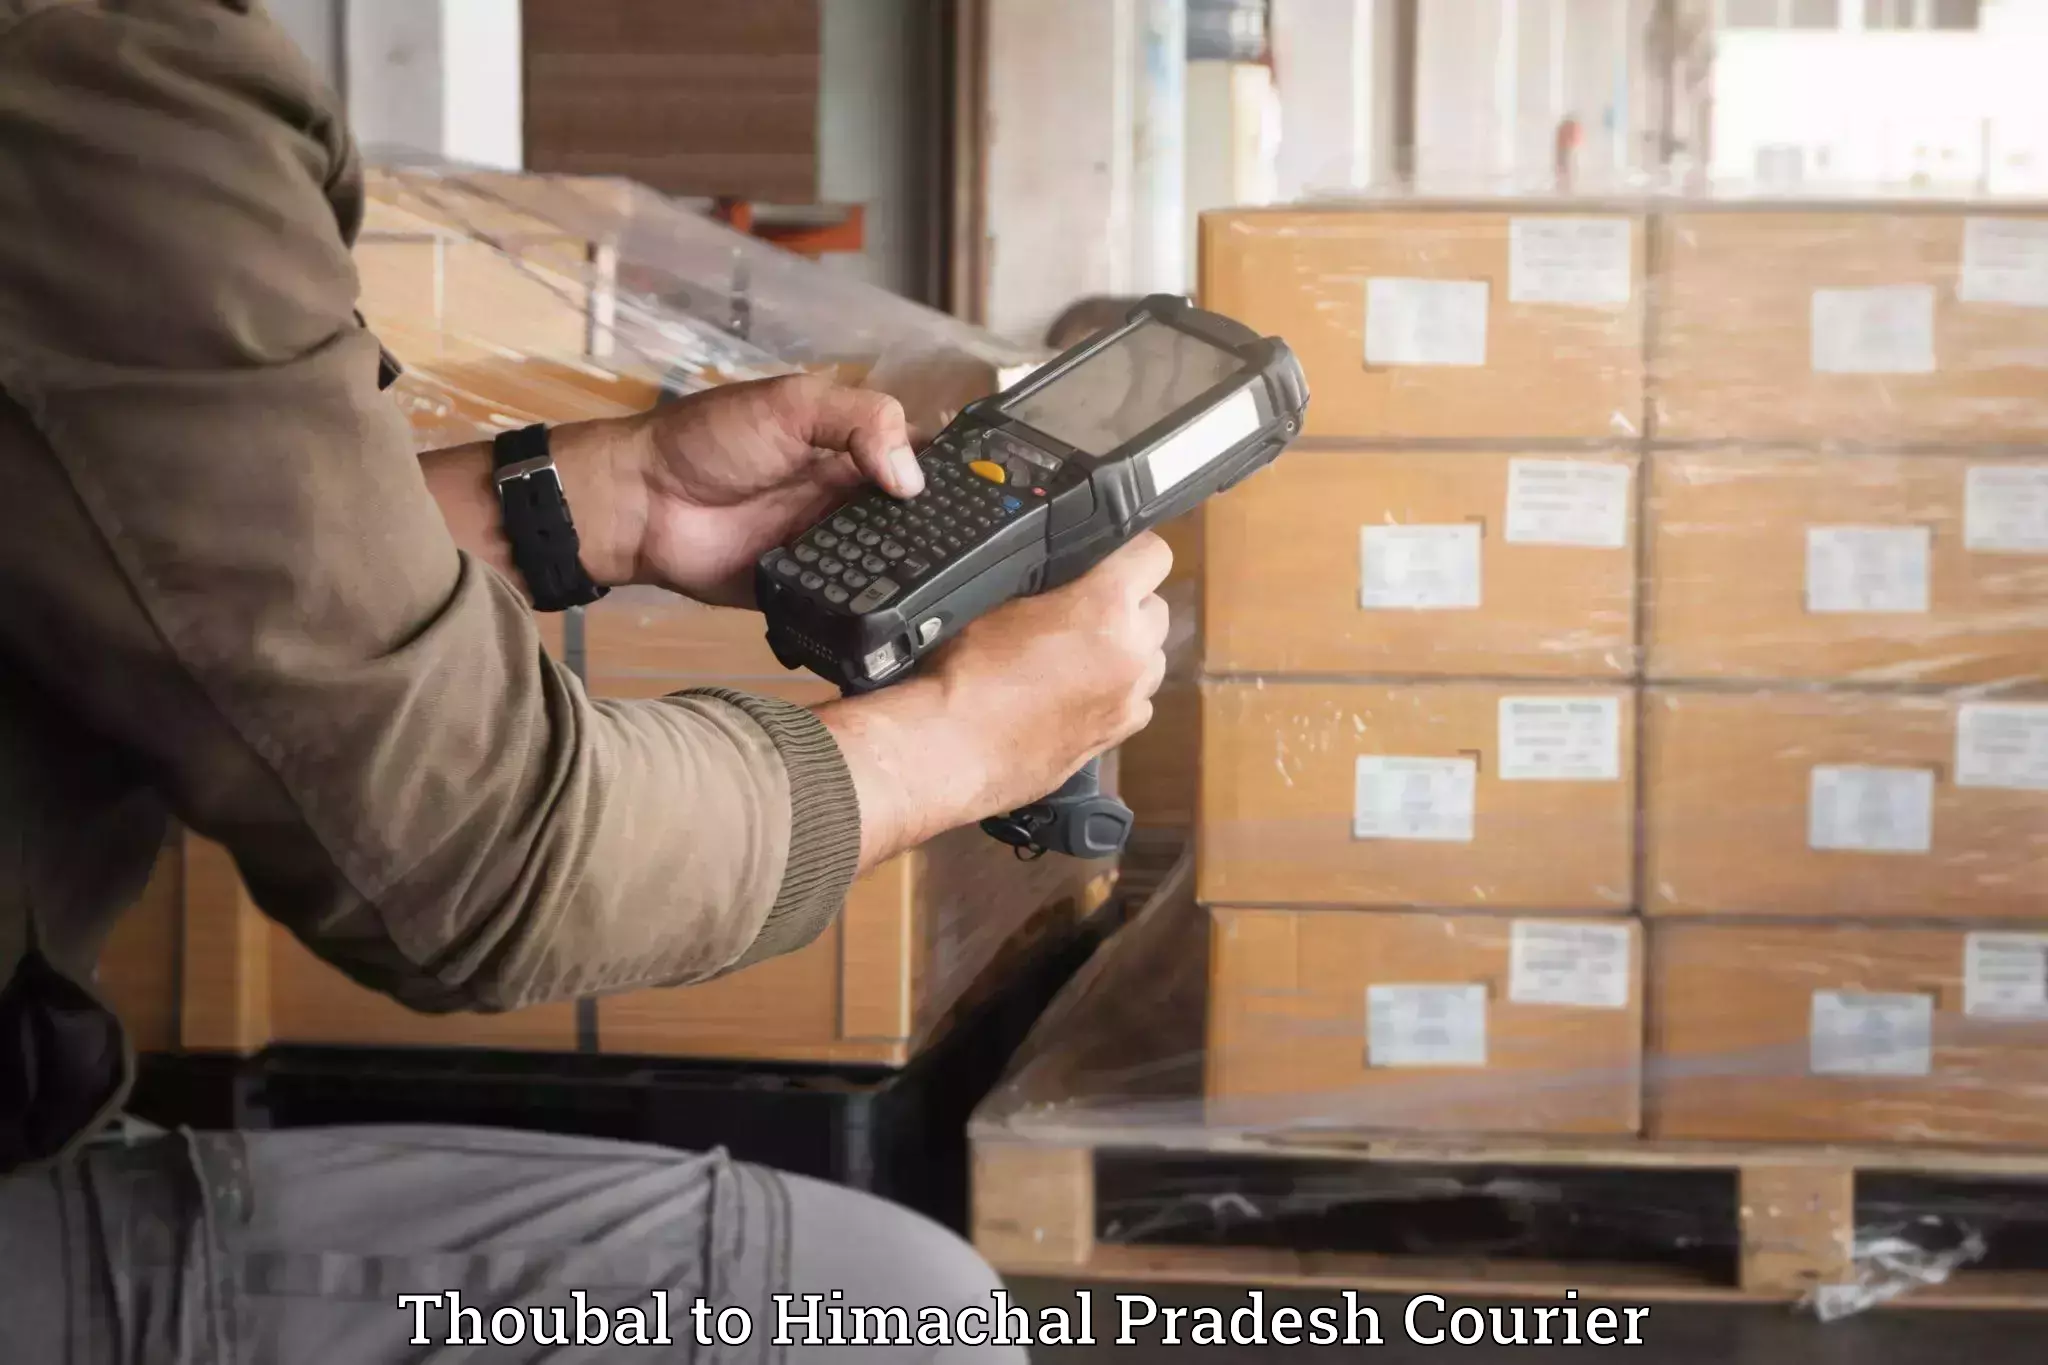 Baggage shipping service Thoubal to Thunag